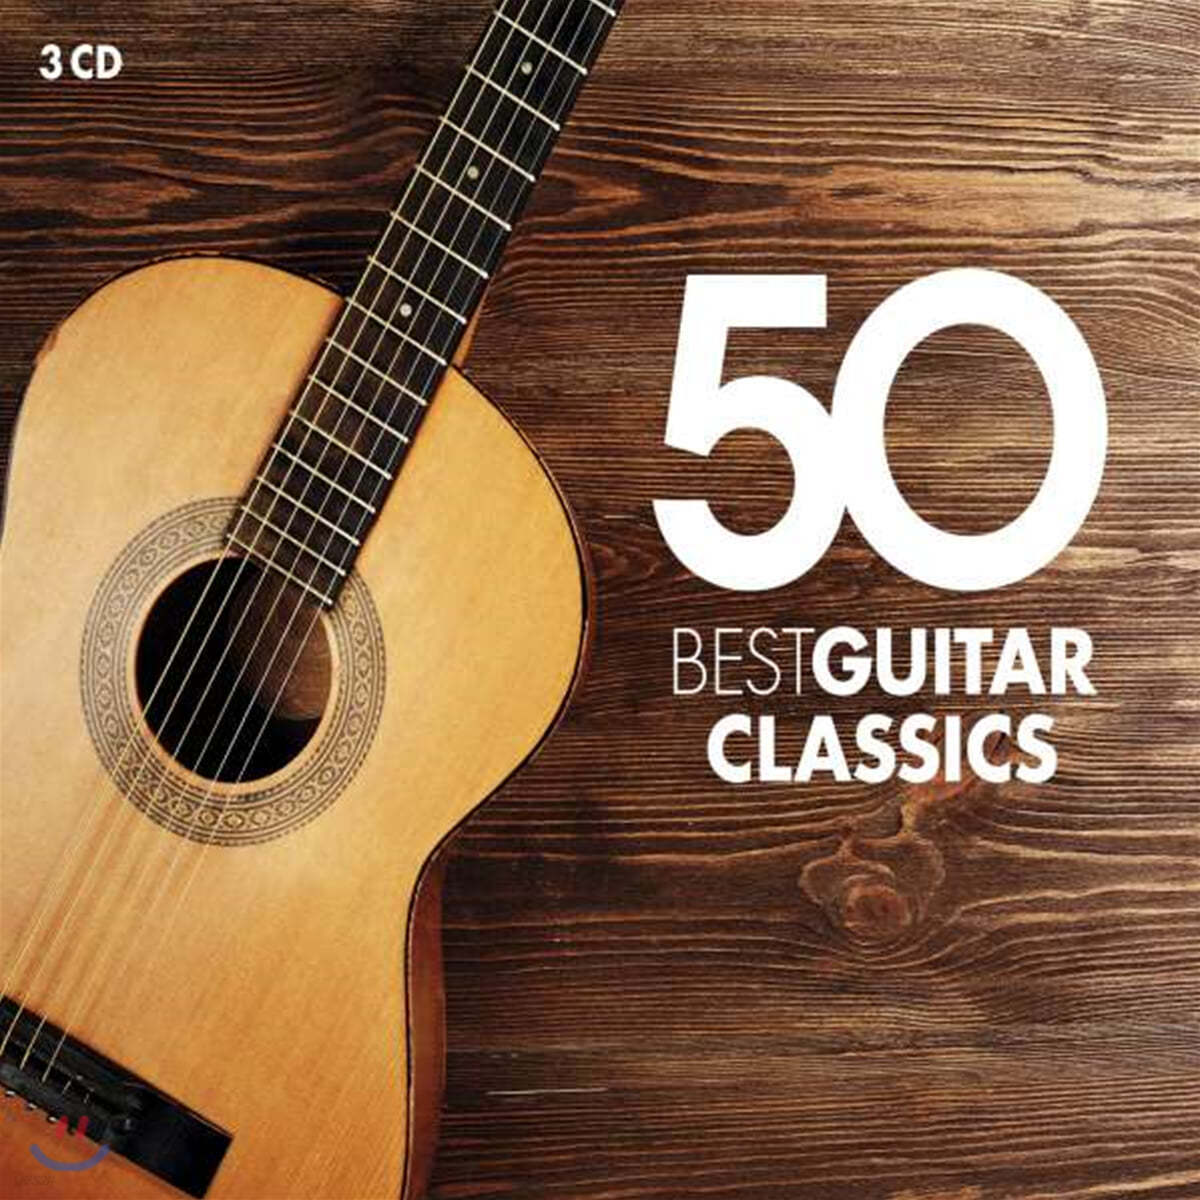 베스트 기타 클래식 50 (50 Best Guitar Classics)